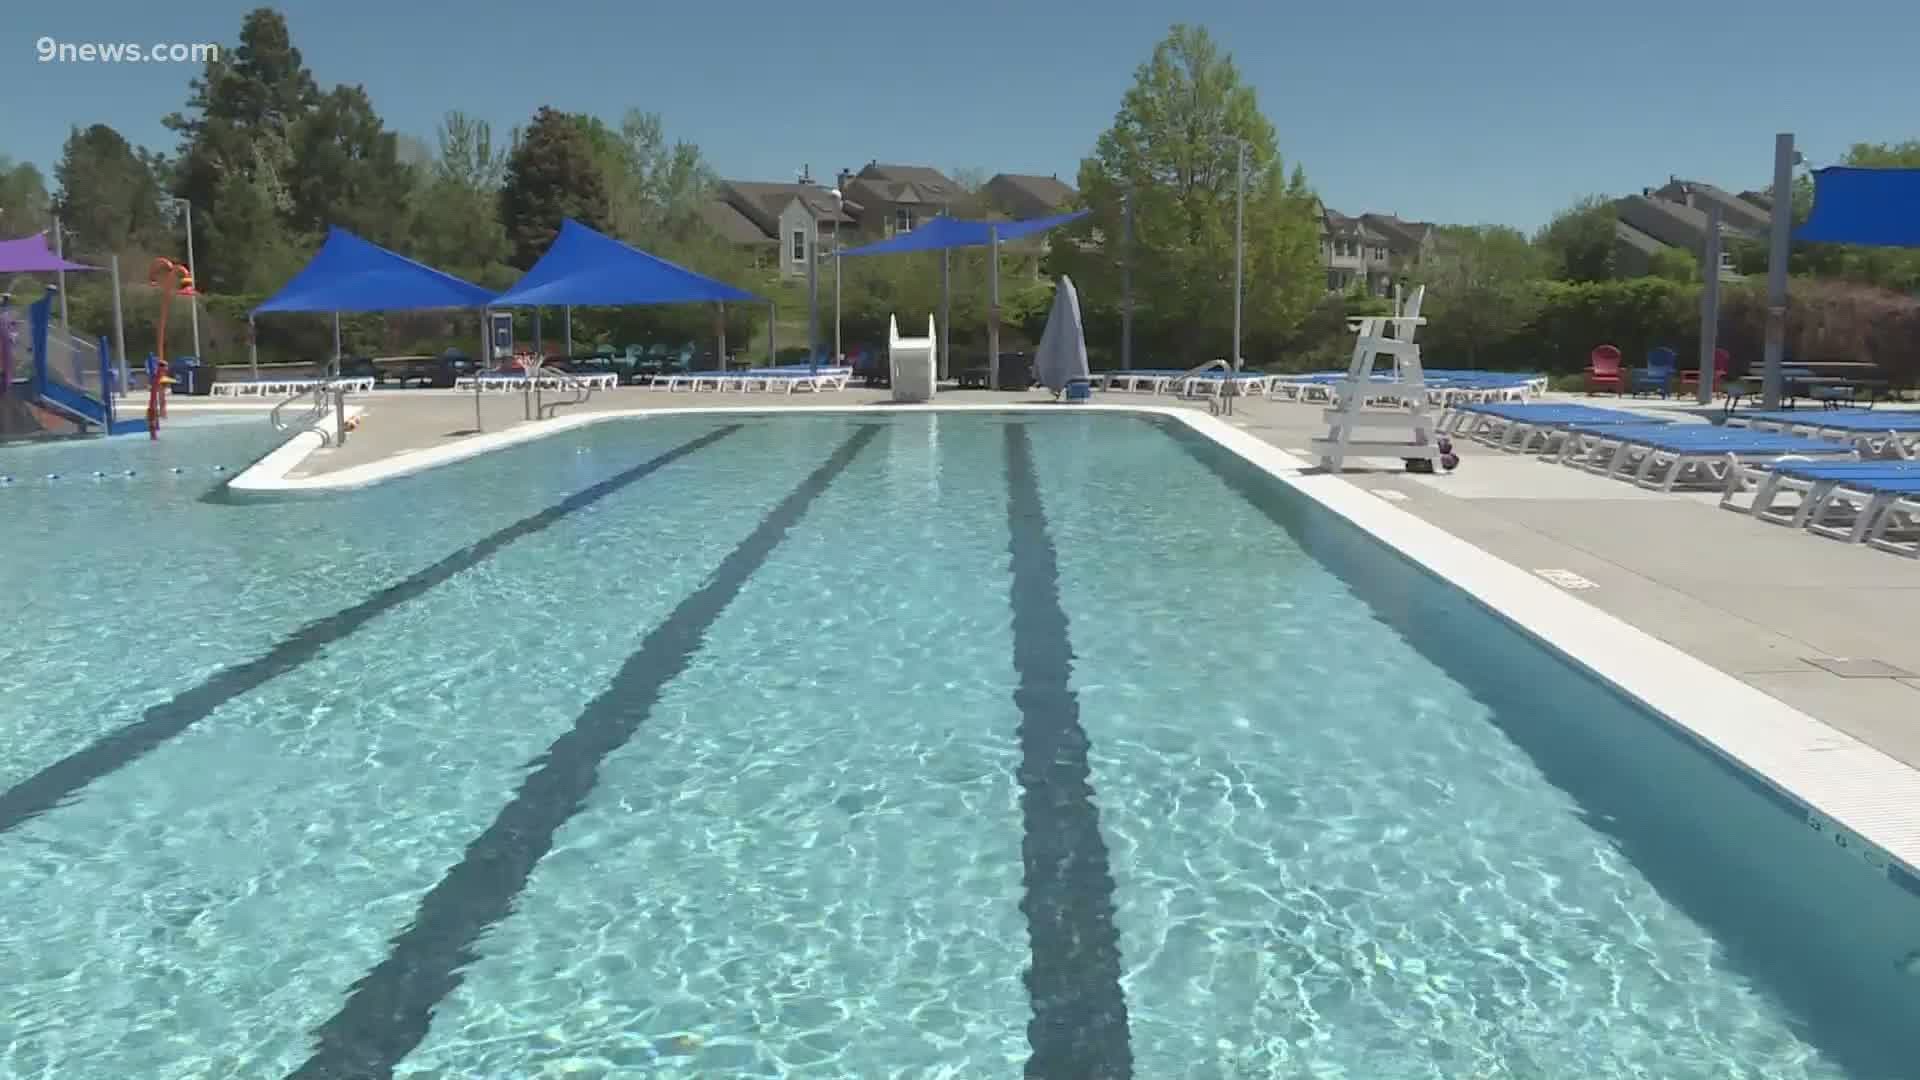 8 Denver outdoor pools open, 3 more opening next week